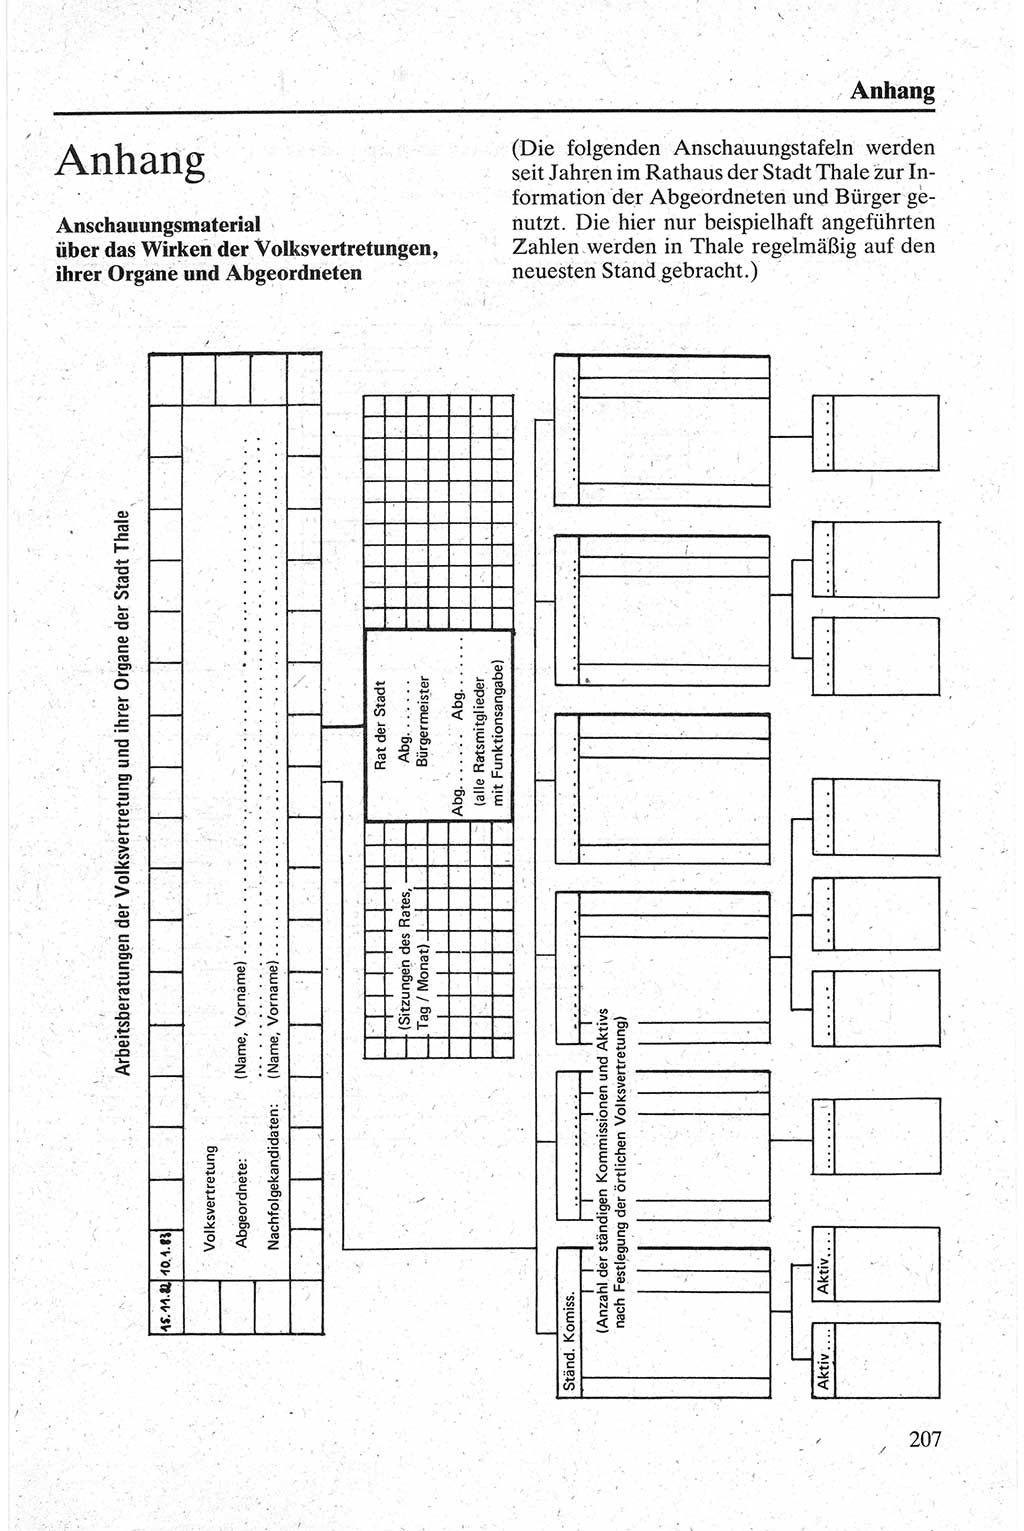 Handbuch für den Abgeordneten [Deutsche Demokratische Republik (DDR)] 1984, Seite 207 (Hb. Abg. DDR 1984, S. 207)